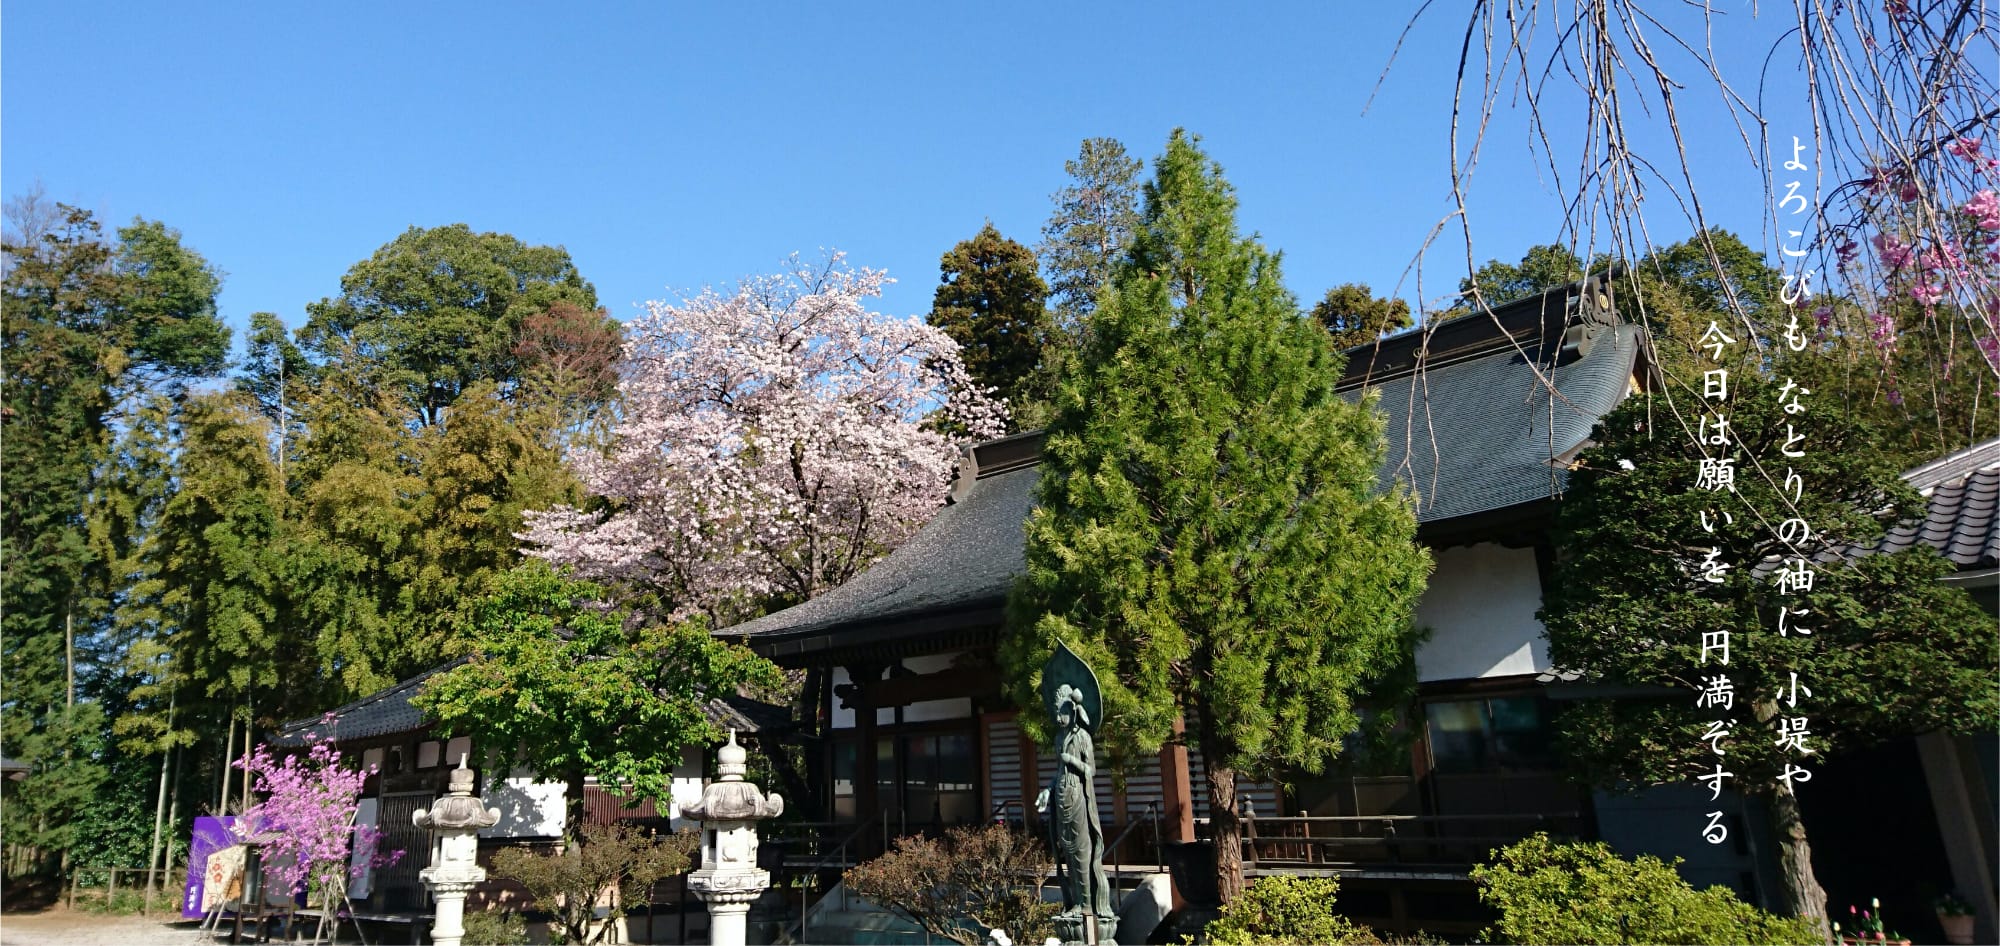 円満寺は809年に開創された古刹であり、葛飾坂東観音霊場の第33番札所です。広大な境内は、桜や銀杏など四季折々の自然に囲まれています。本堂と客殿は地域屈指の大きさで、大人数のご法要も可能です。